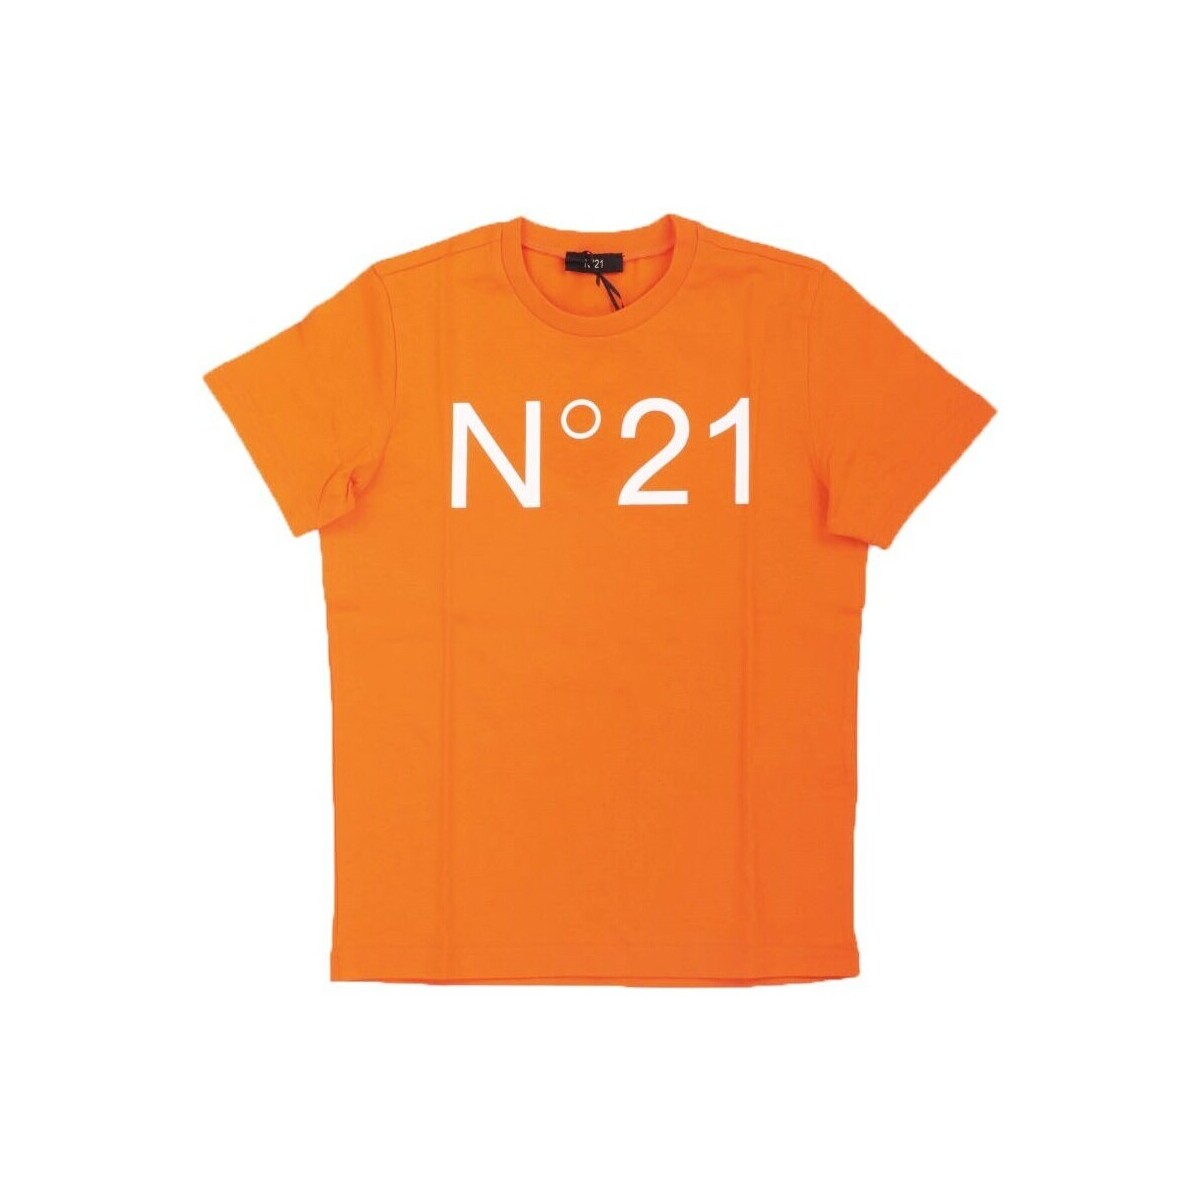 Ruhák Gyerek Rövid ujjú pólók N°21 N21173 Narancssárga